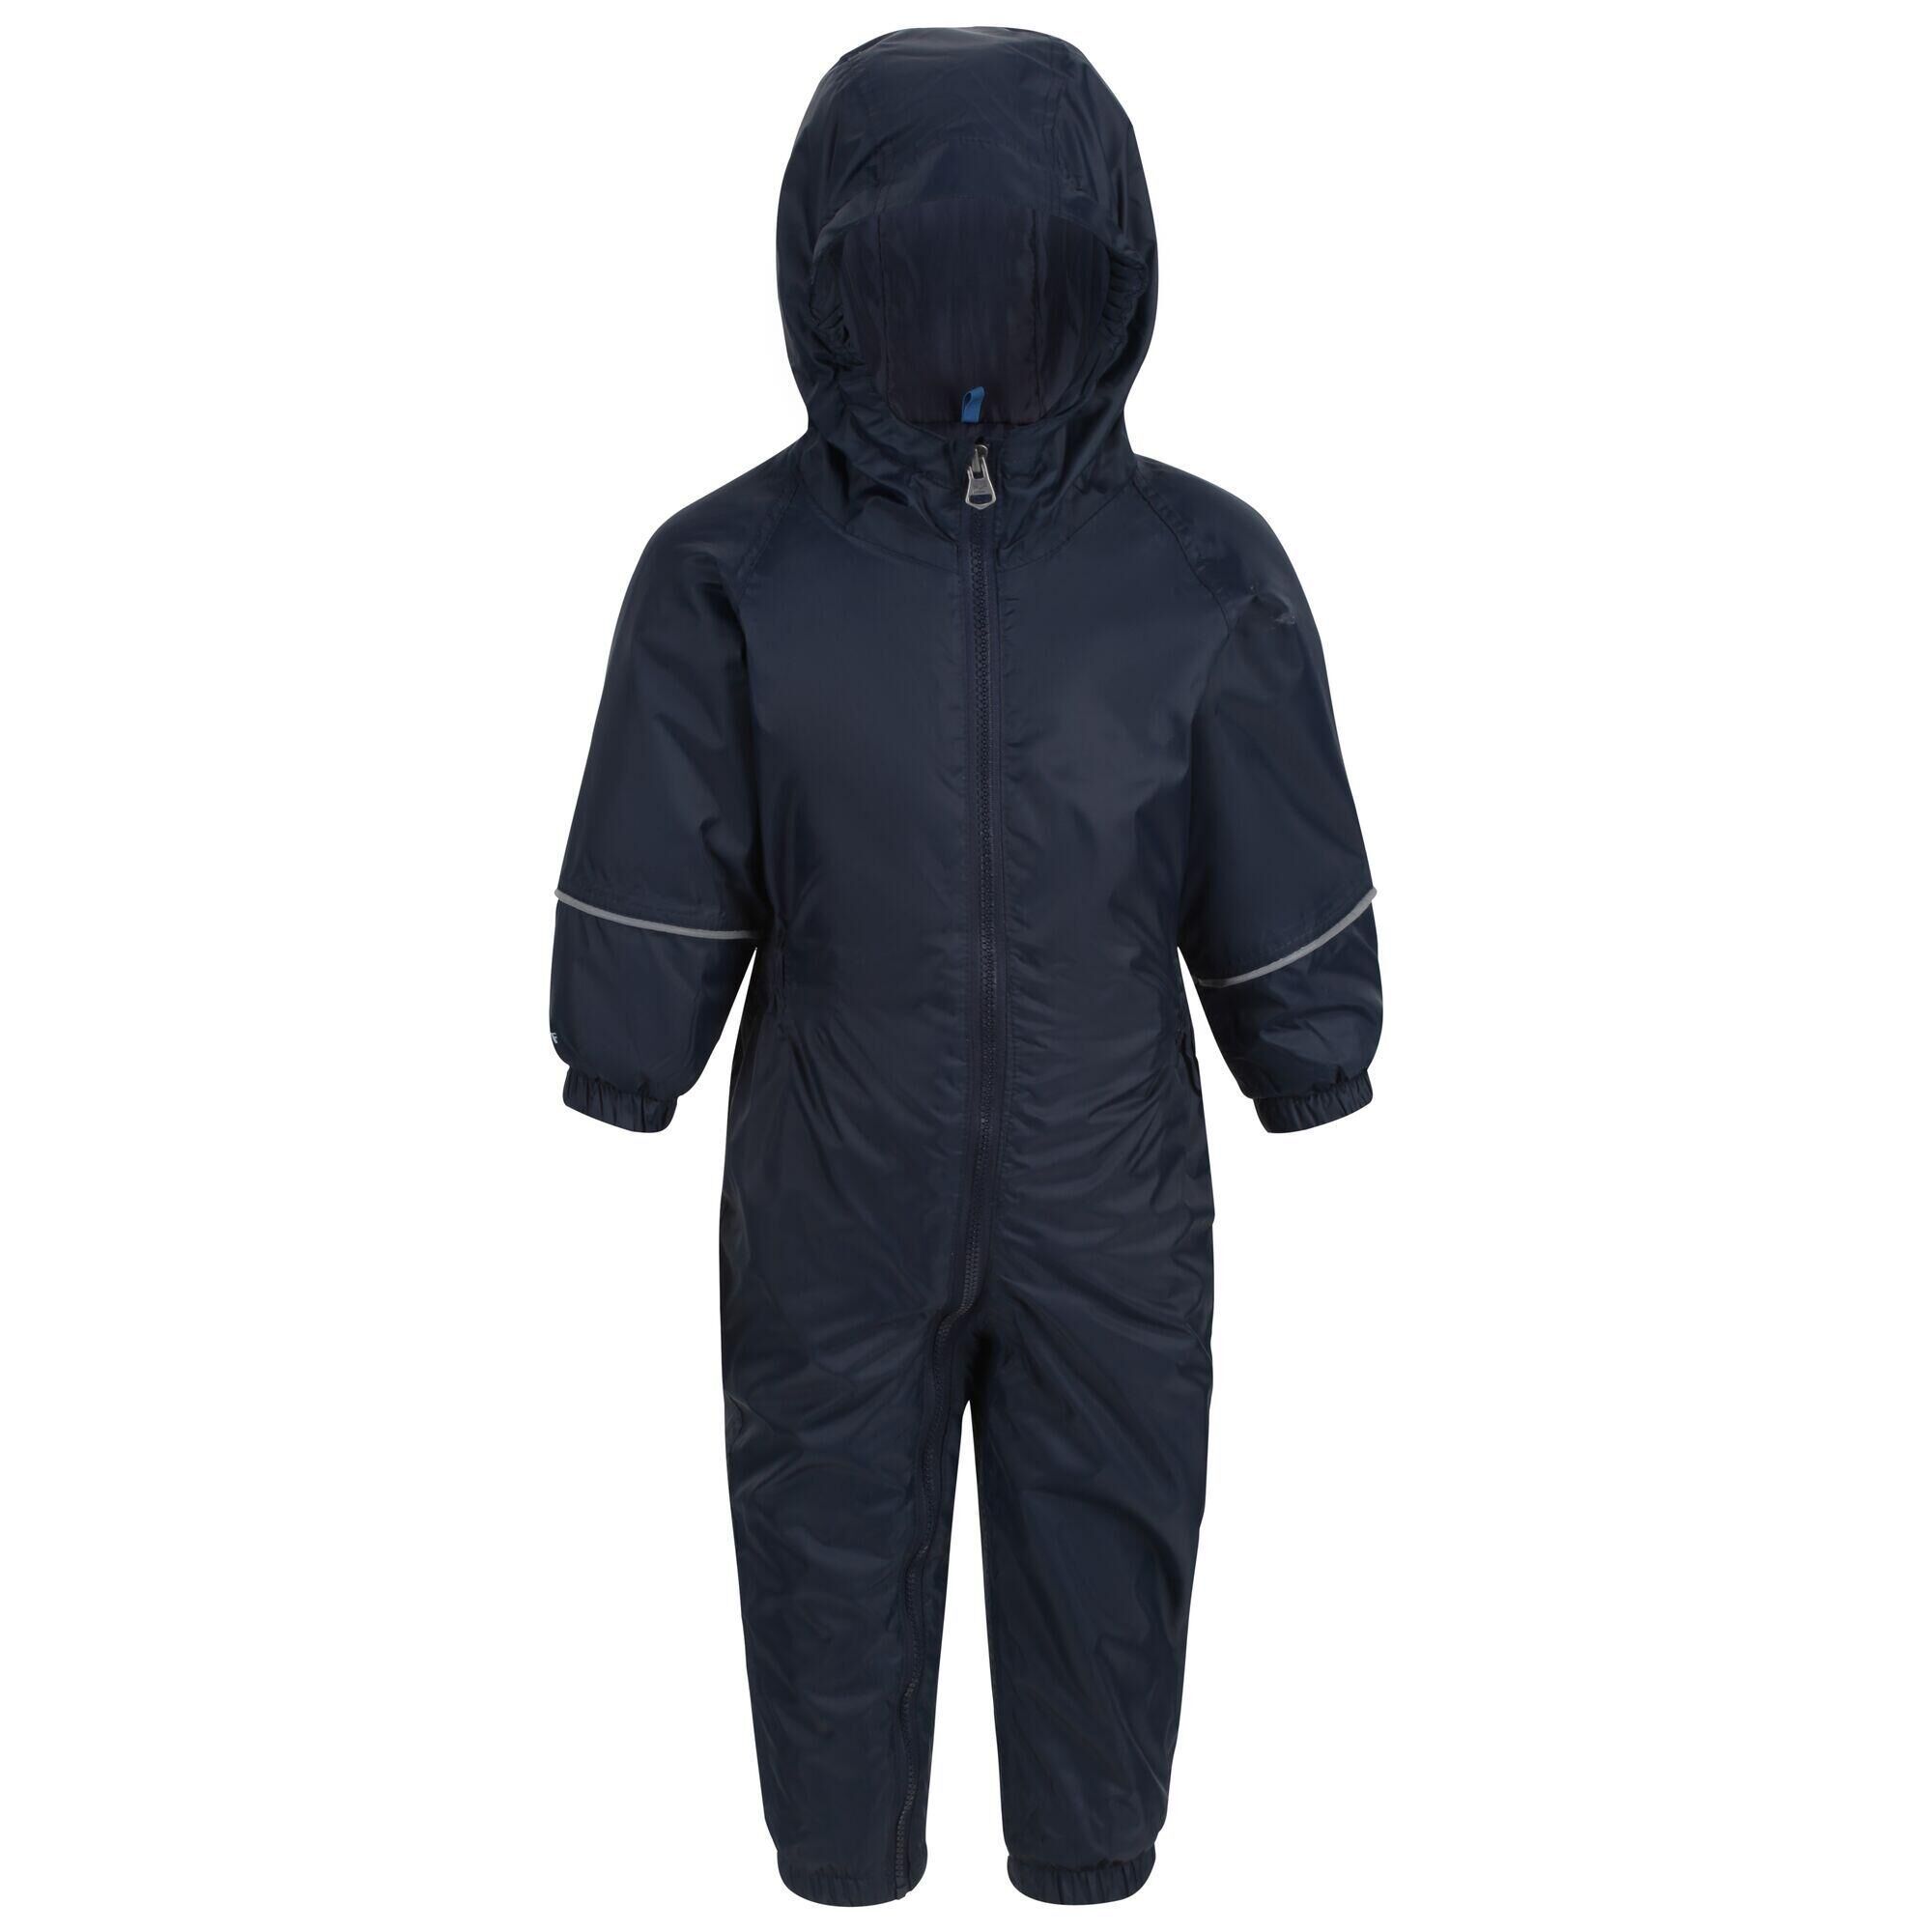 REGATTA Childrens/Kids Splashit Puddle Suit (Navy)